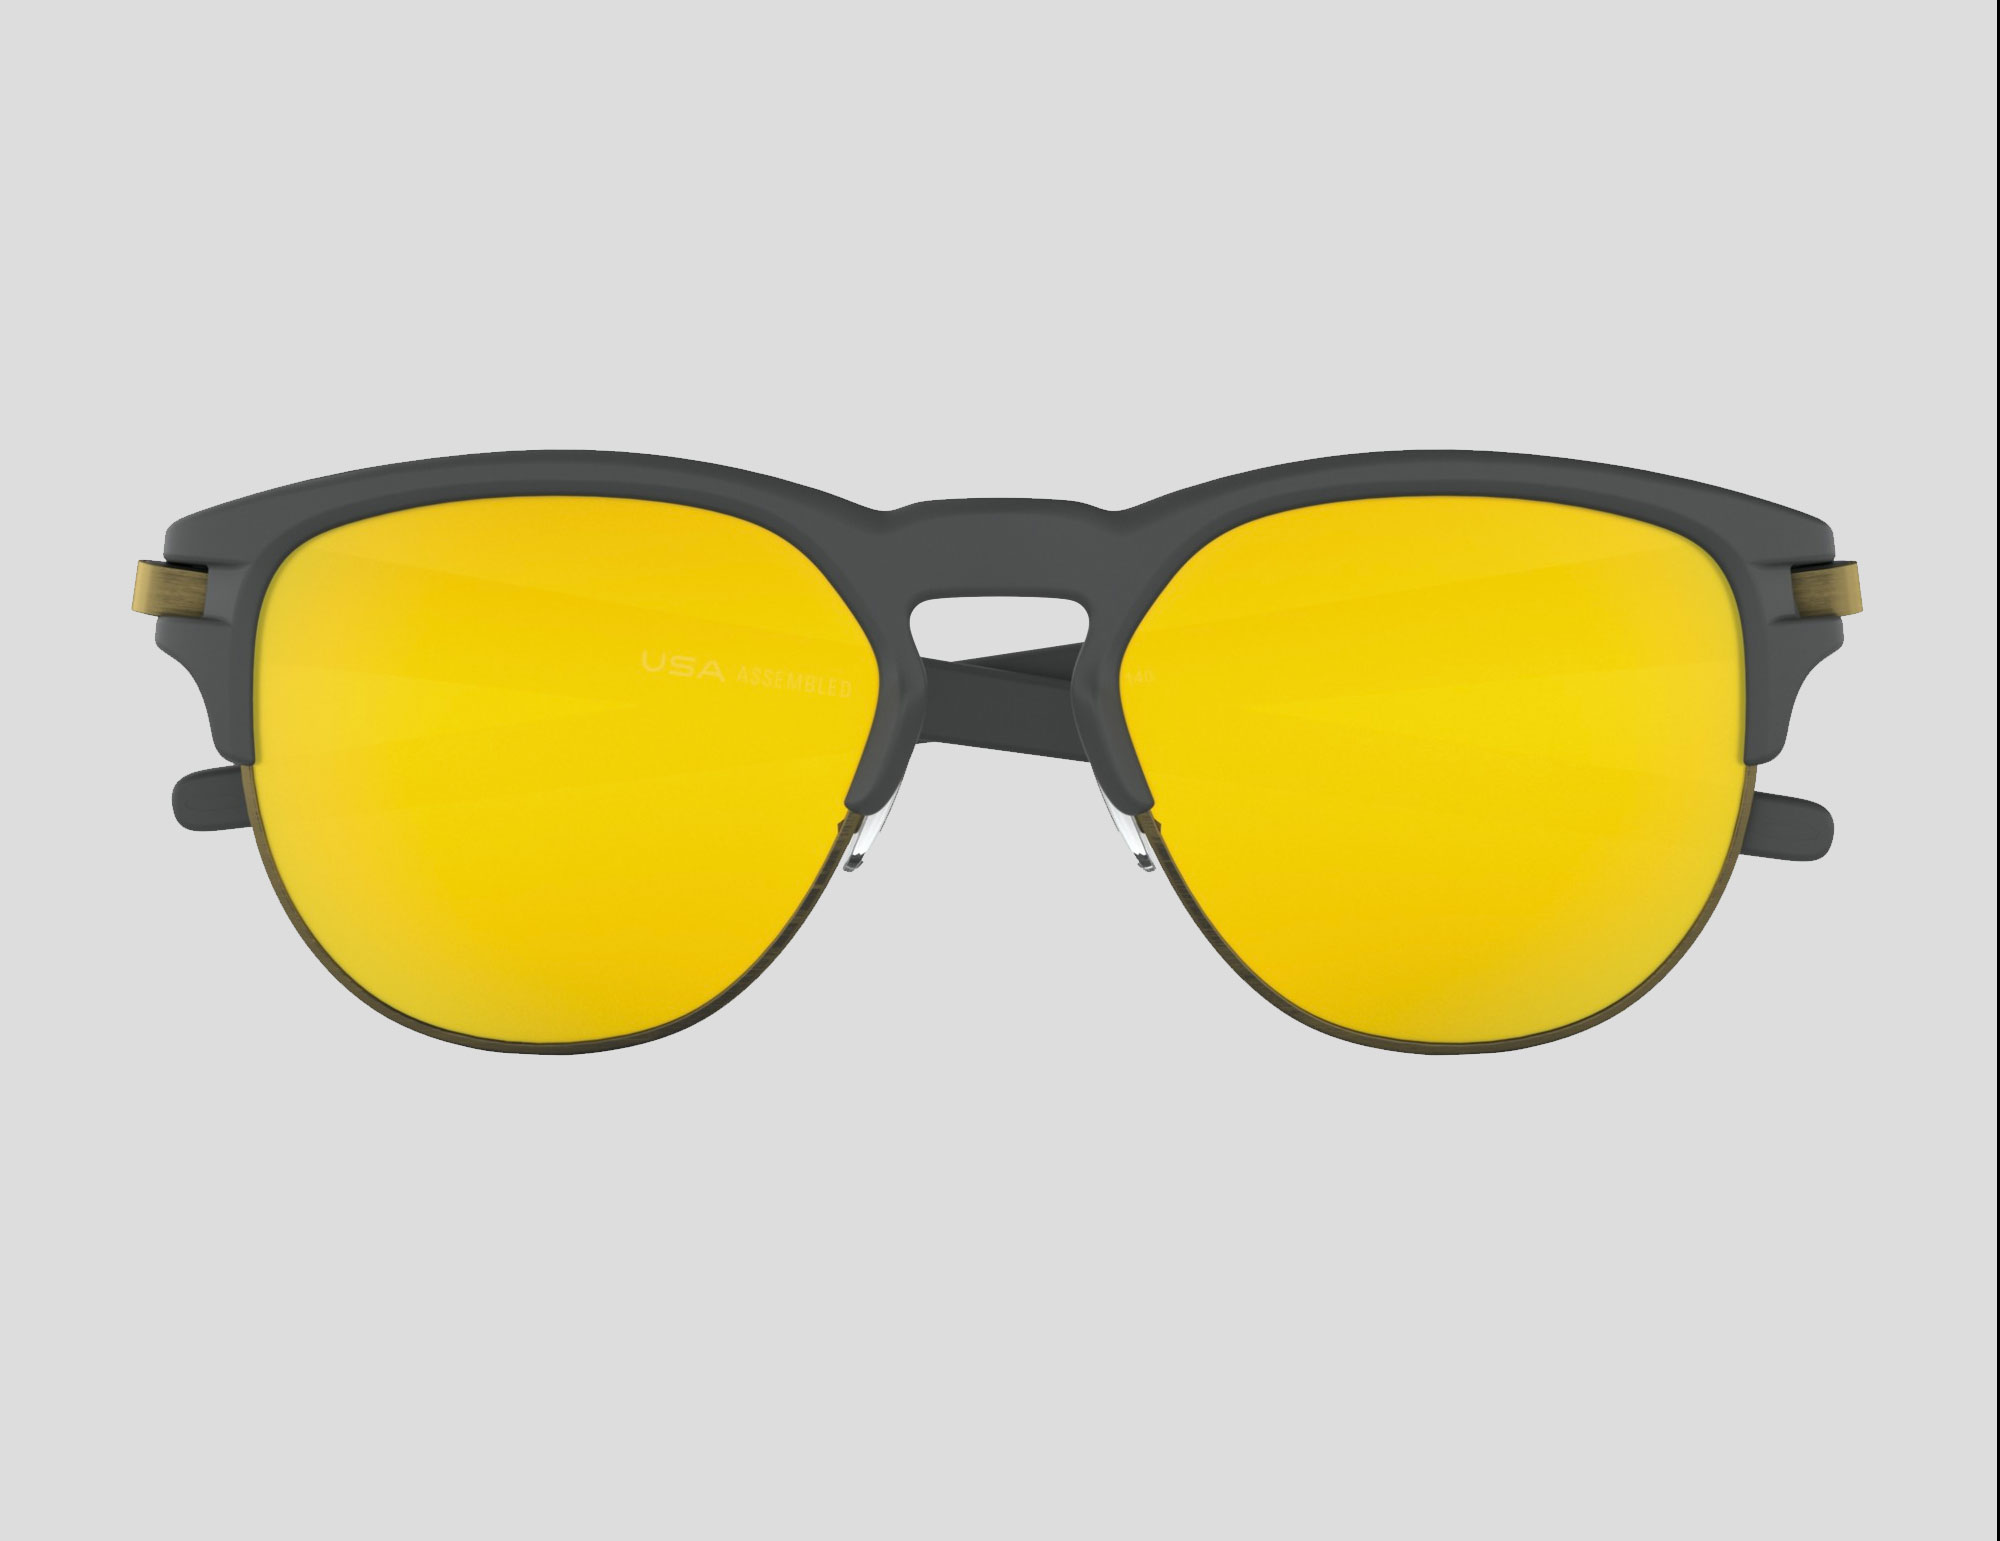 Sunglasses Buyers Guide - Oakley Latch Key